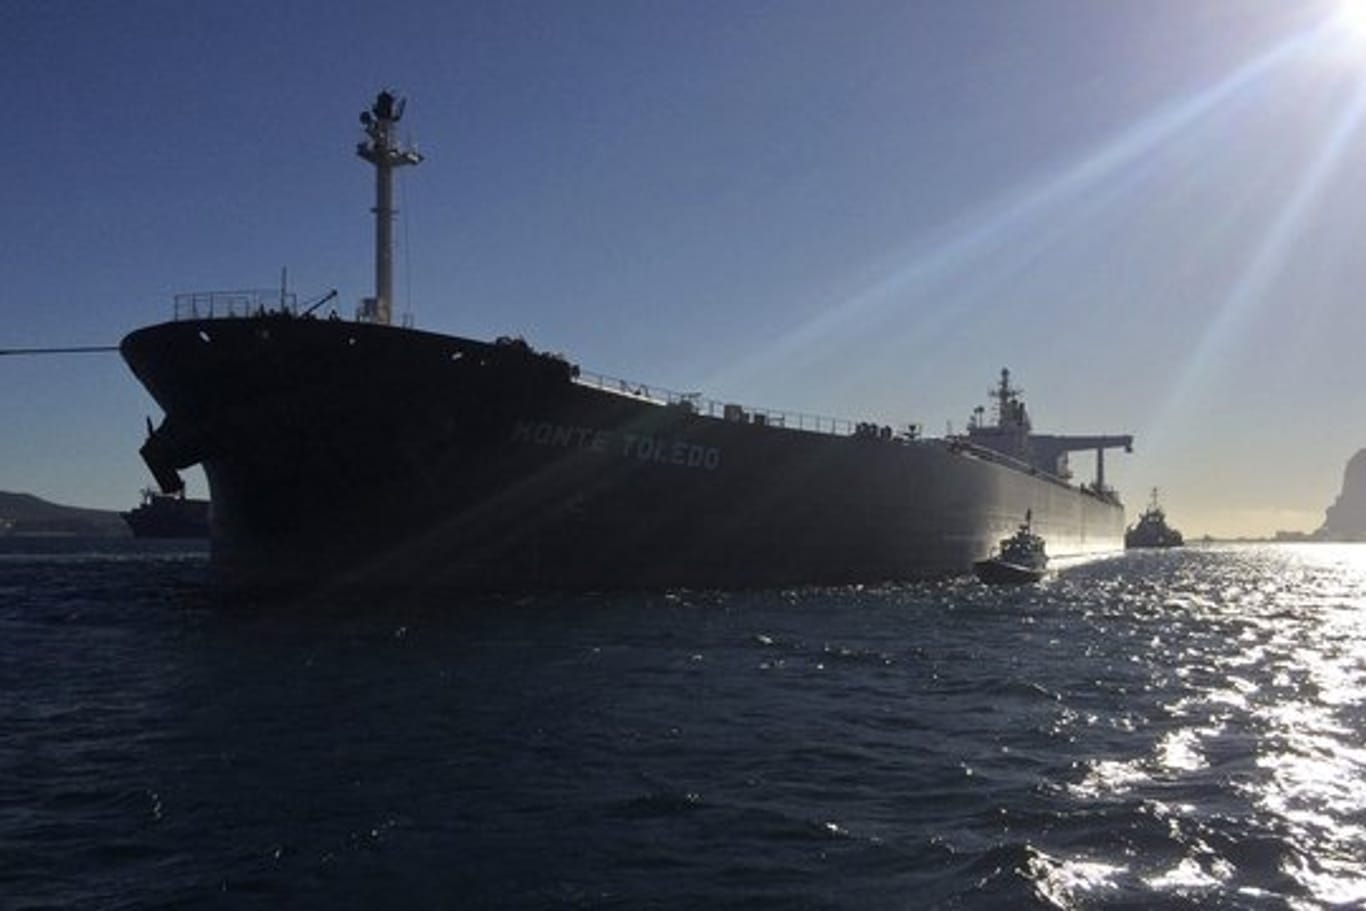 Der Tanker "Monte Toledo" verlässt den spanischen Hafen Algeciras, nachdem er iranisches Rohöl entladen hat.